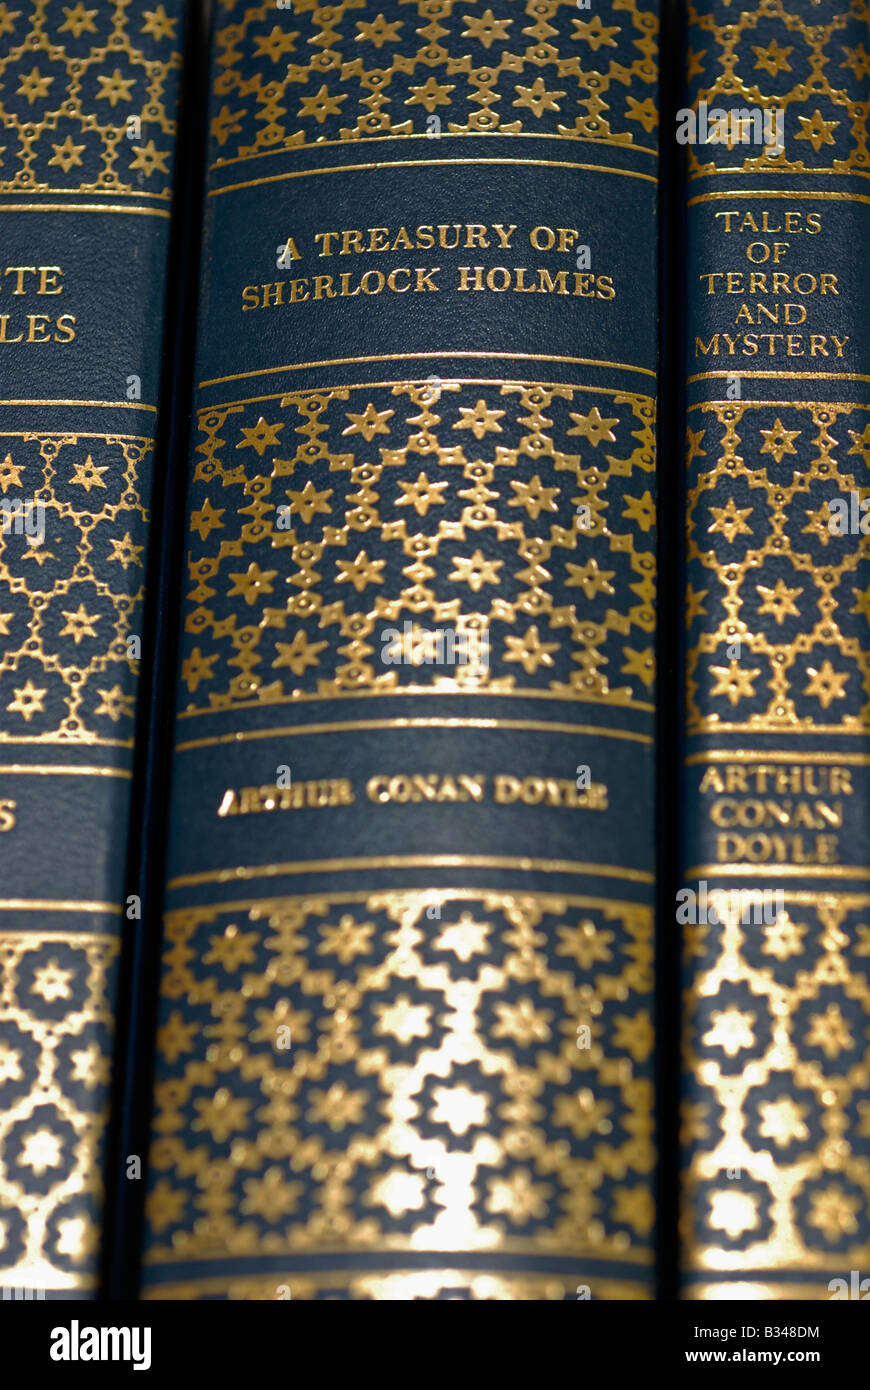 Book Spines, Arthur Conan Doyle, Sherlock Holmes Stock Photo